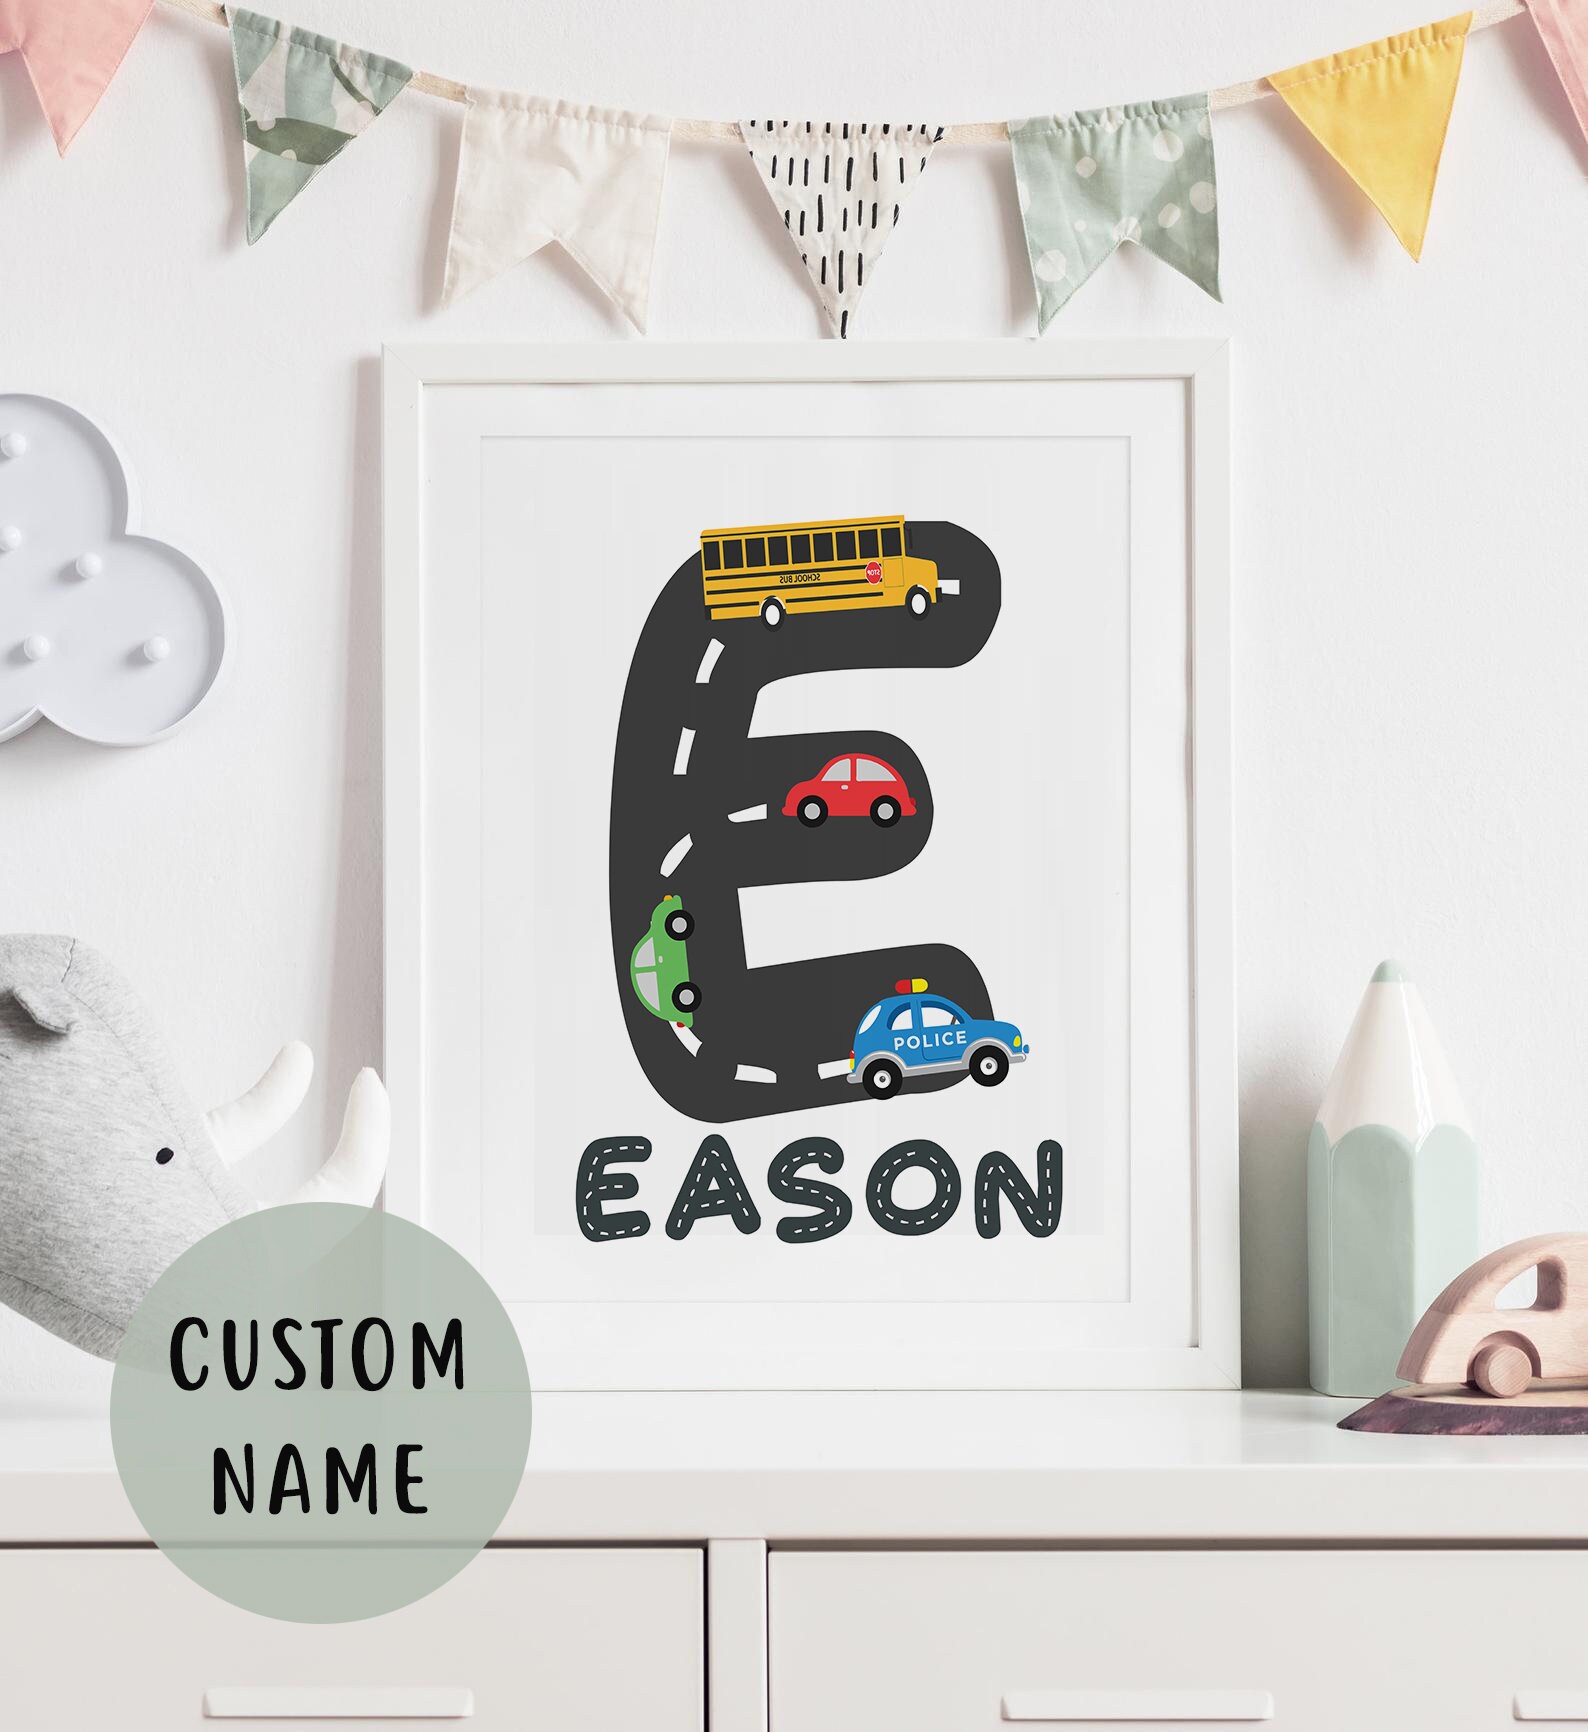 10 coches de póster que han decorado la habitación de muchos de nosotros